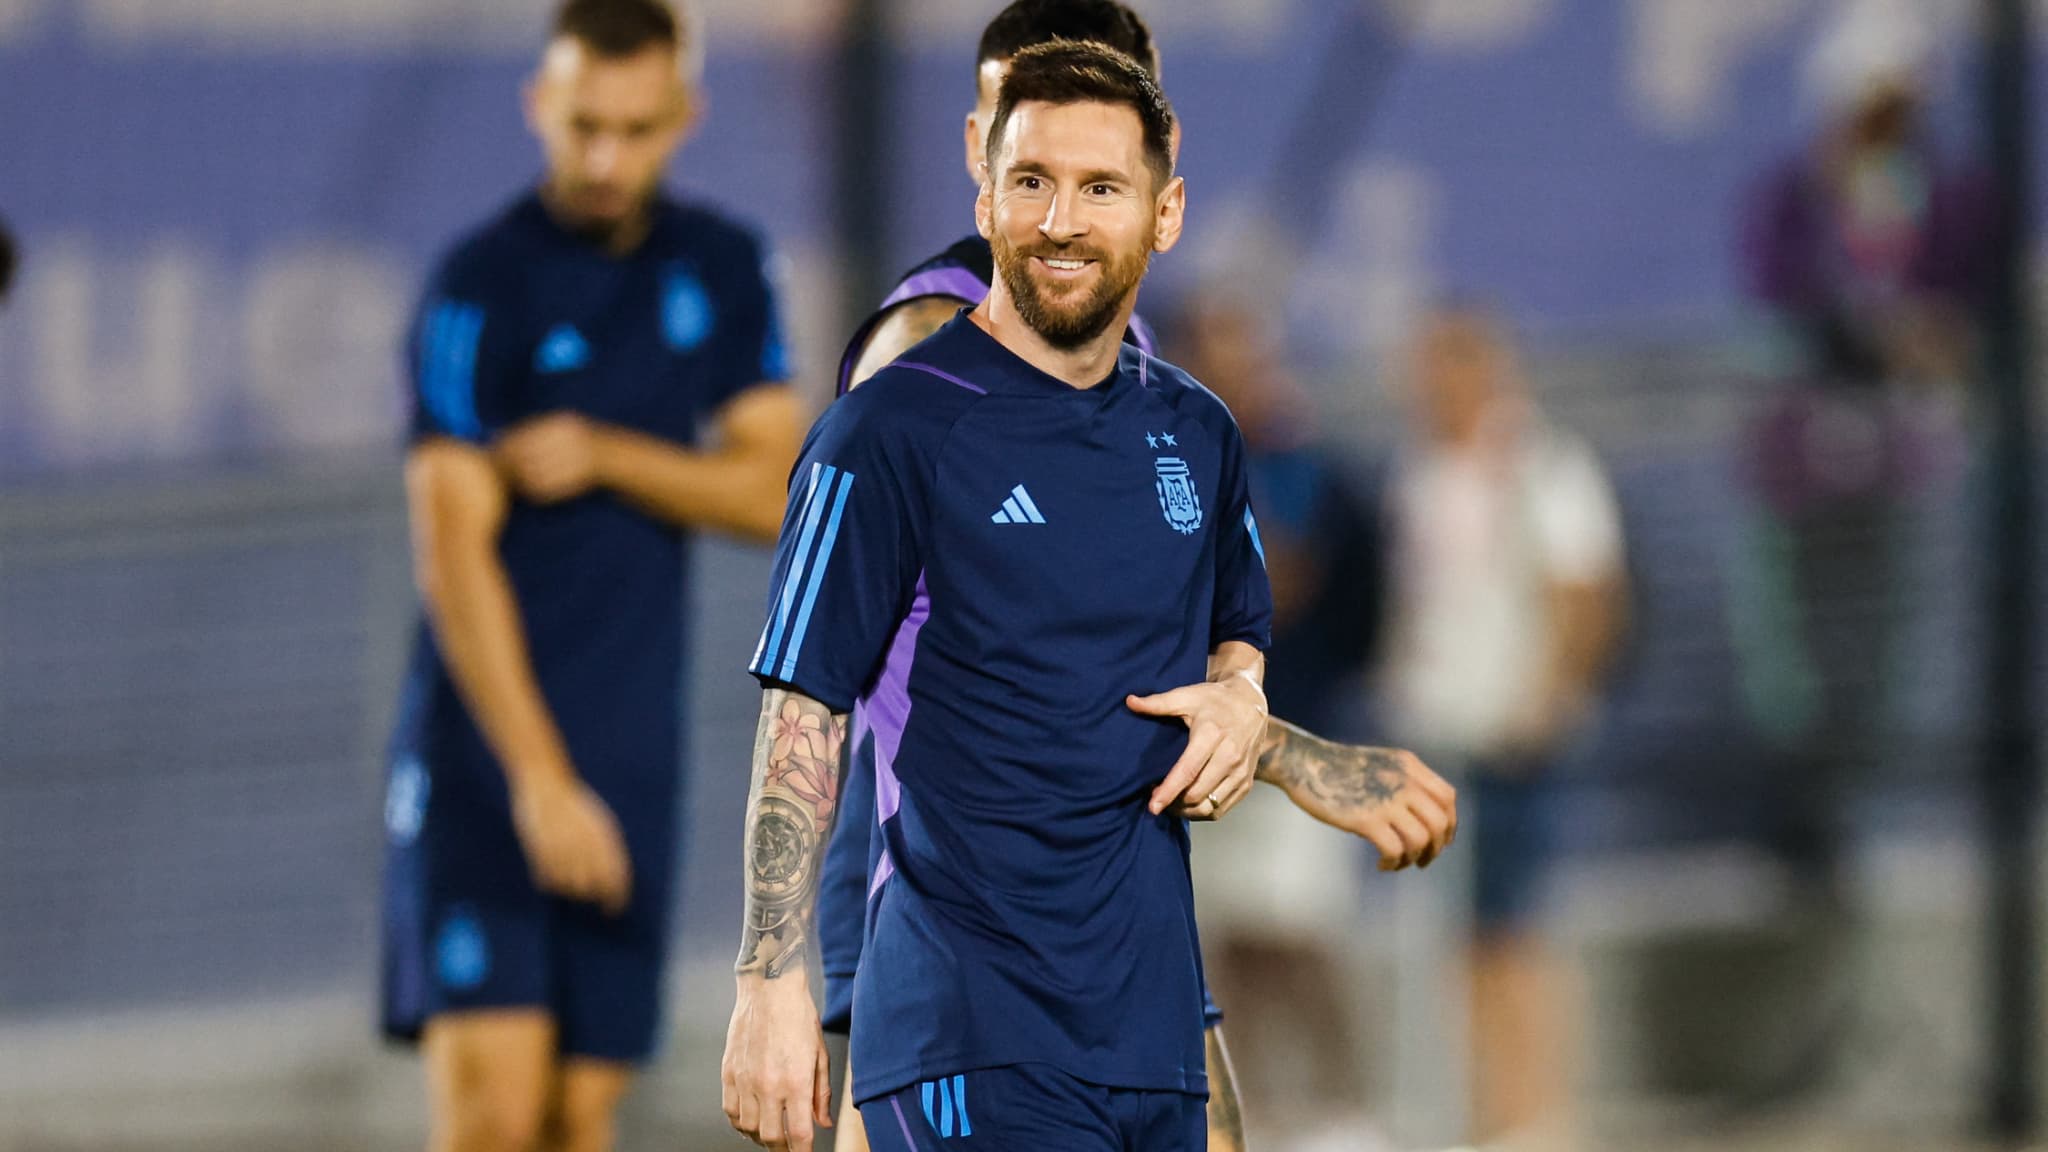 VIDEO : Le cadeau improbable reçu par Messi après avoir battu